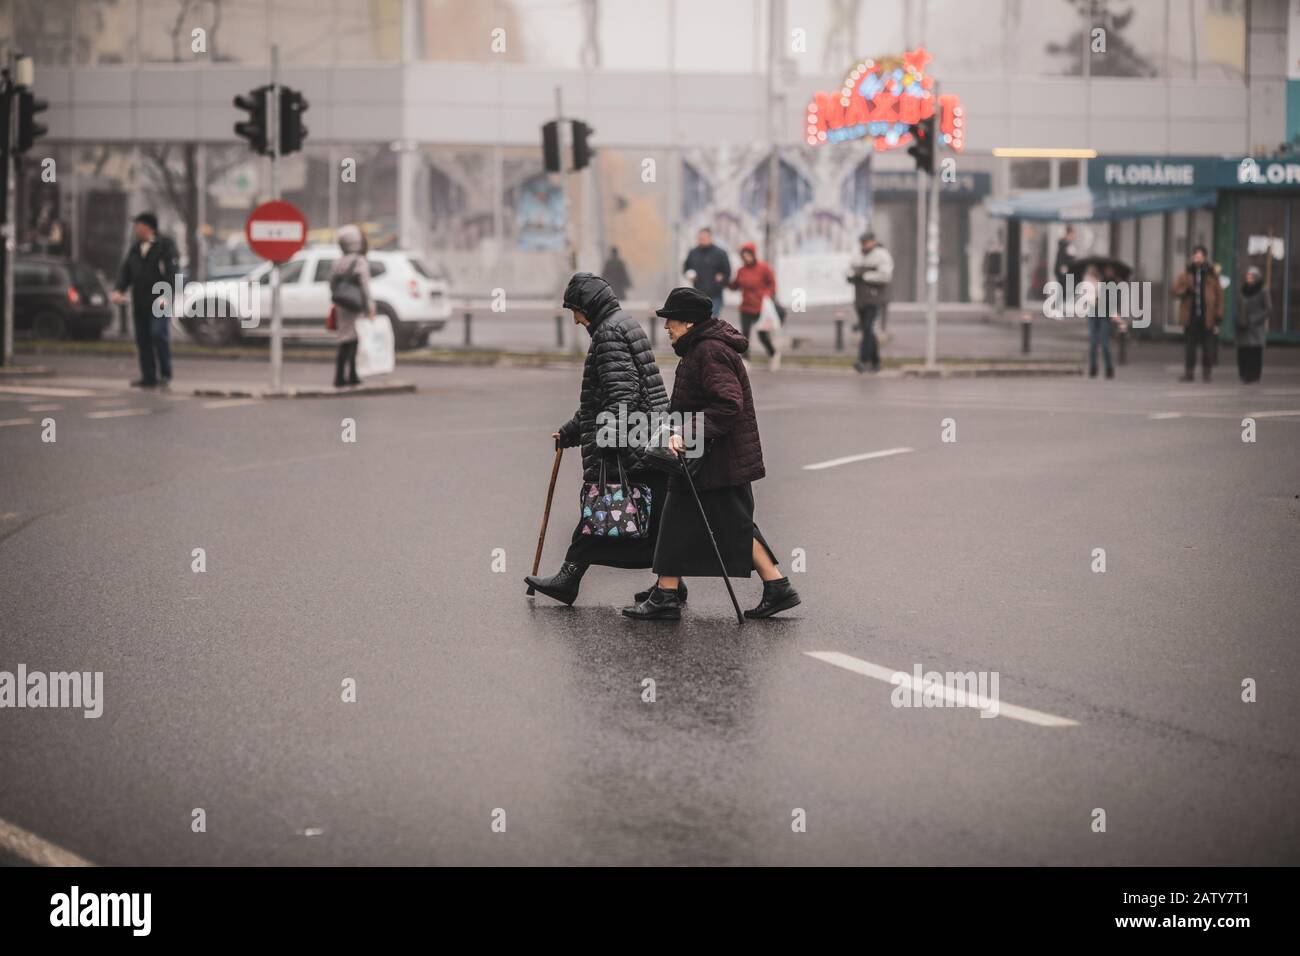 Bucarest, Roumanie - 20 décembre 2019: Deux vieilles femmes traversent illégalement la route au milieu d'un carrefour. Banque D'Images